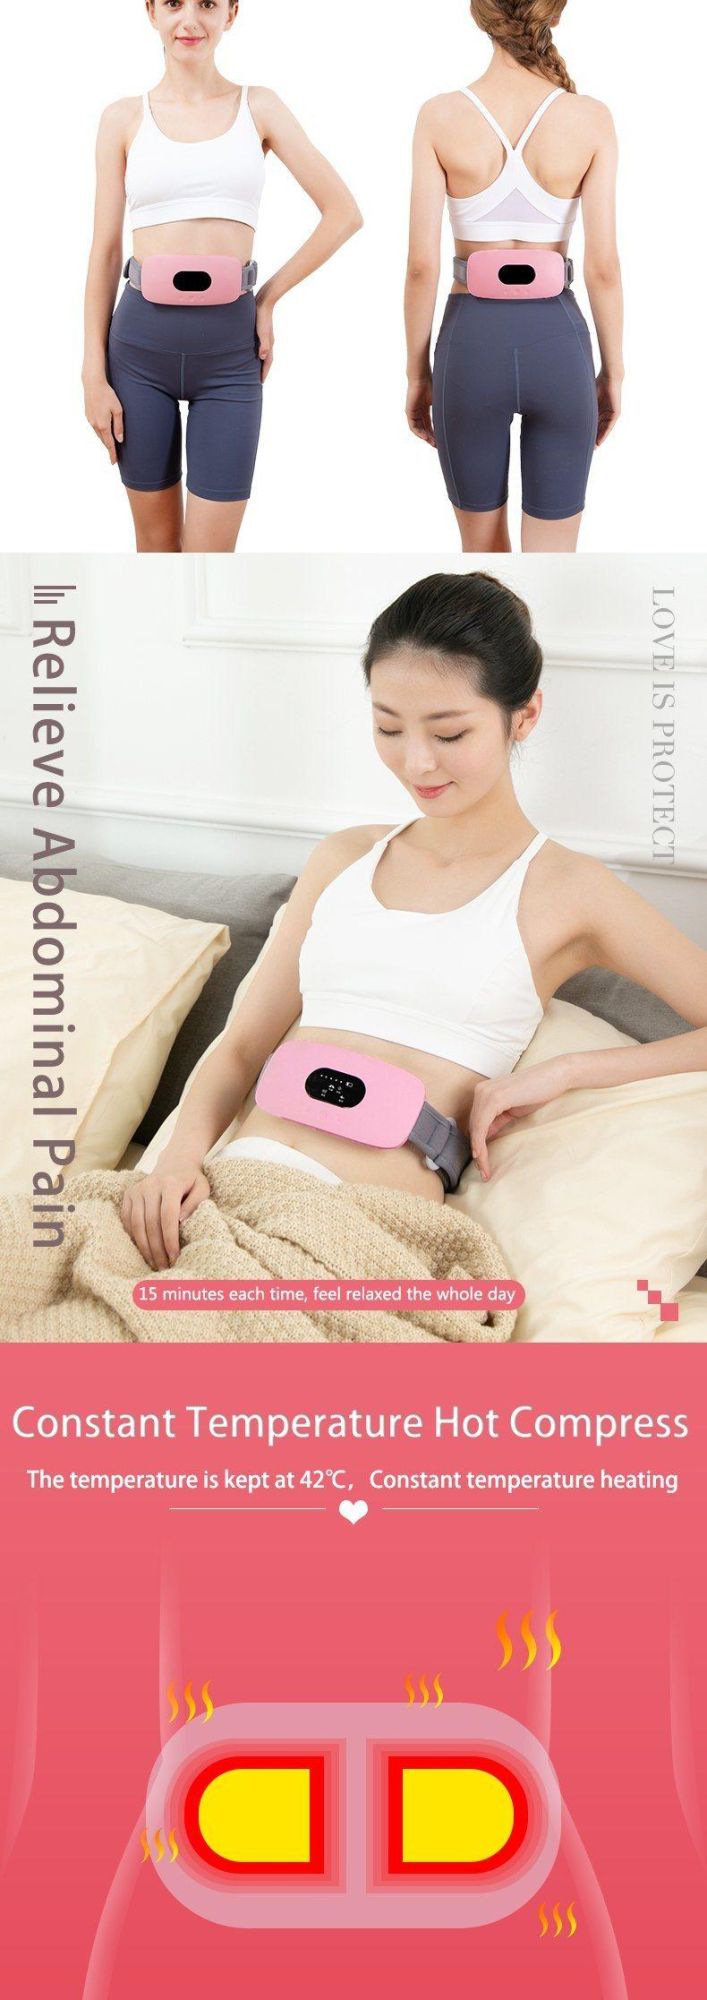 Hezheng EMS Abdomen Massager Lumbar Electric Waist Electric Massage Slim Belt